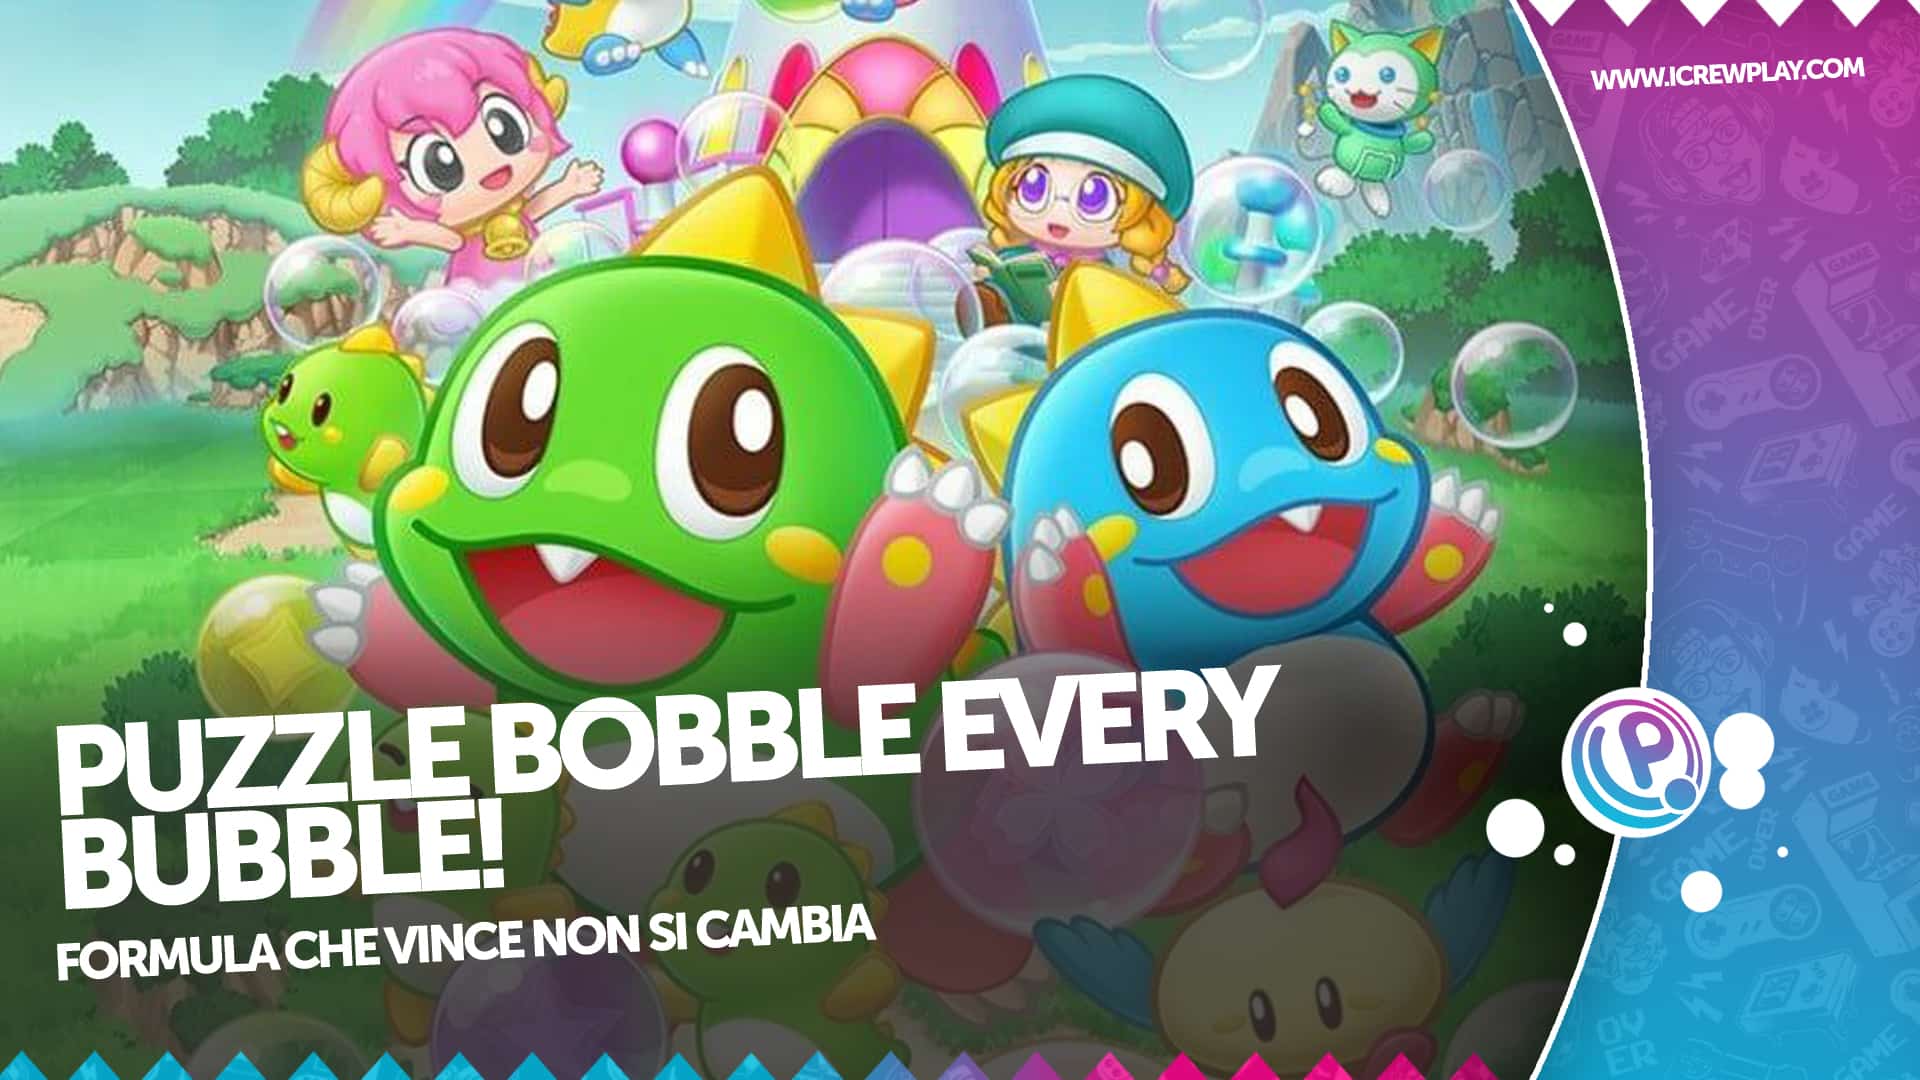 Puzzle Bobble Everybubble! la nostra recensione 4